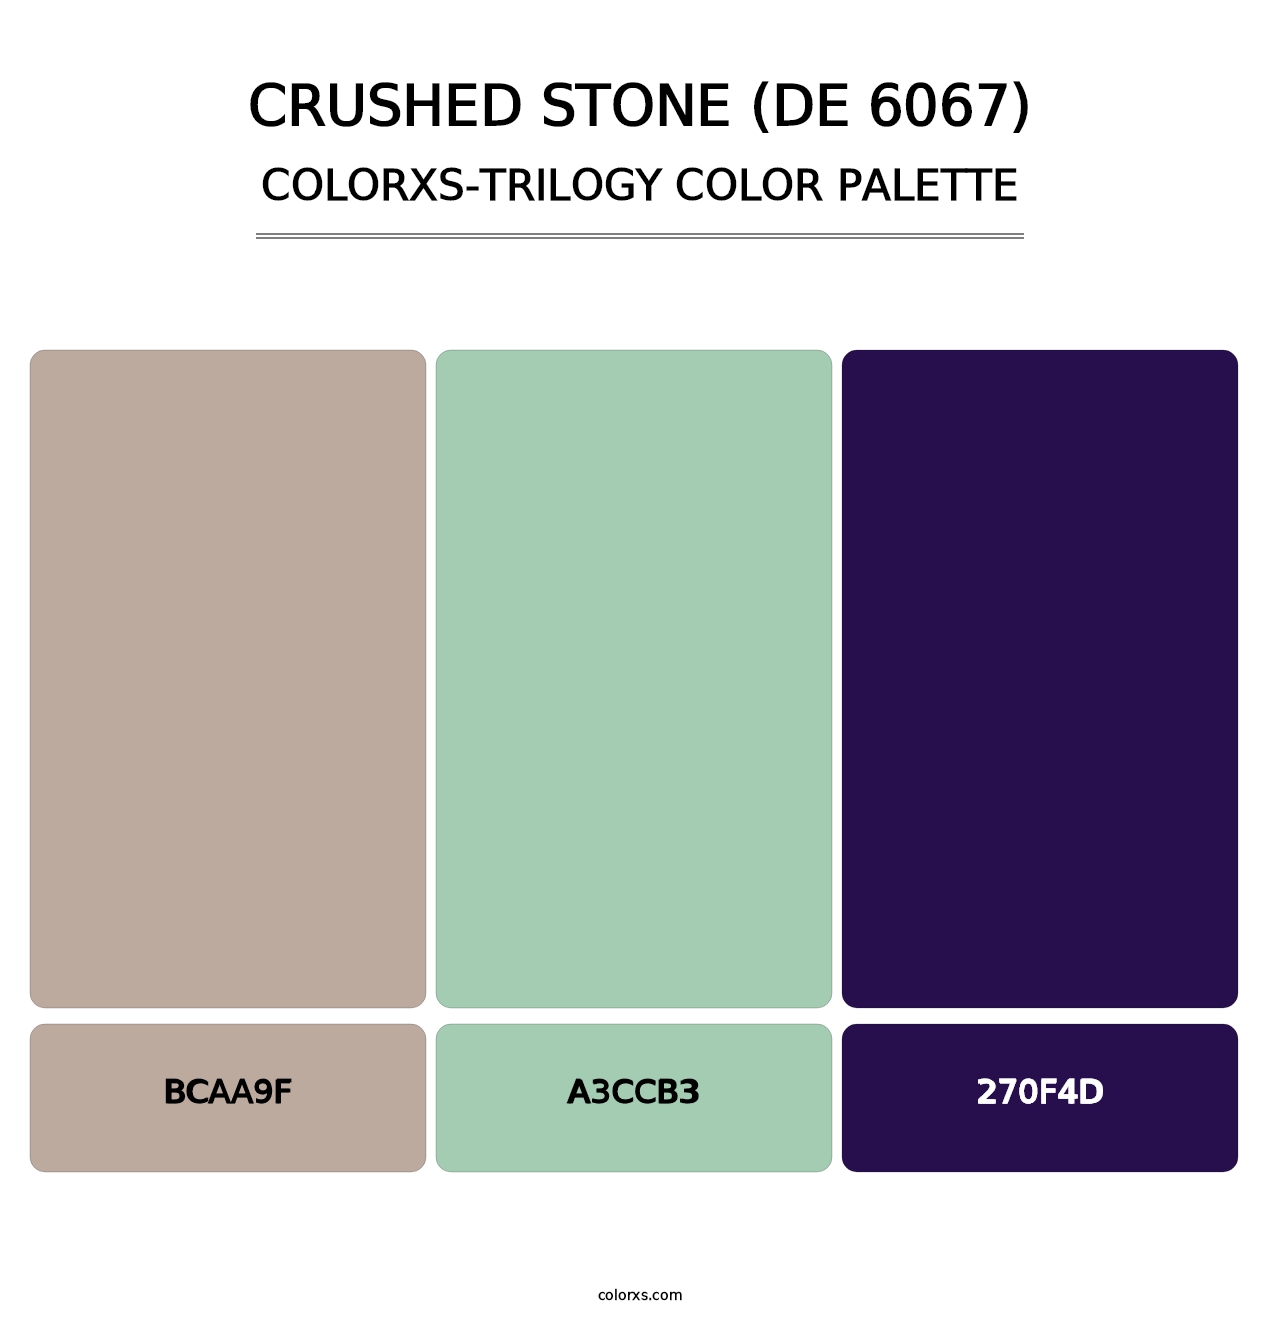 Crushed Stone (DE 6067) - Colorxs Trilogy Palette